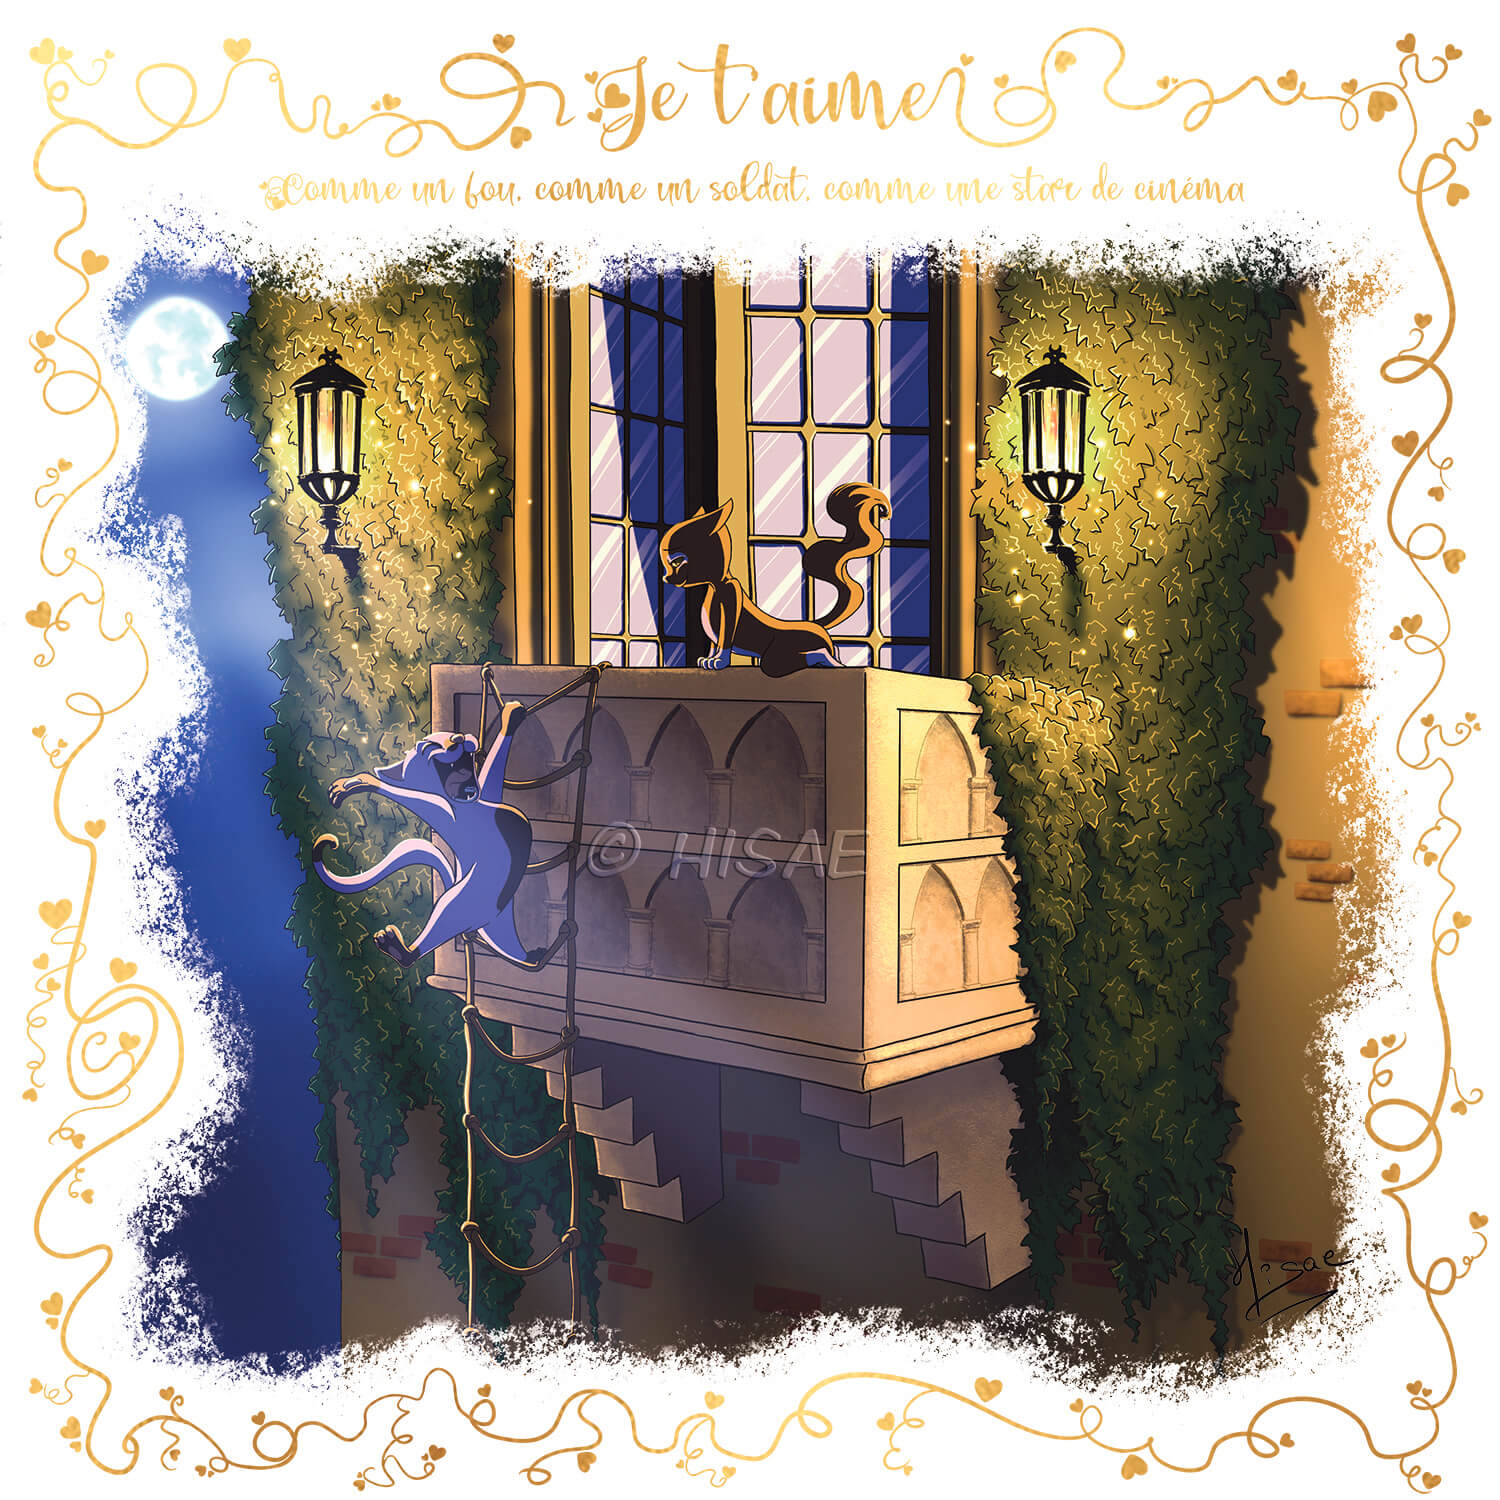 Dessin numérique format carte postale pour la Saint-valentin représentant la scène du balcon de Roméo et Juliette avec des chats ©Hisae illustrations